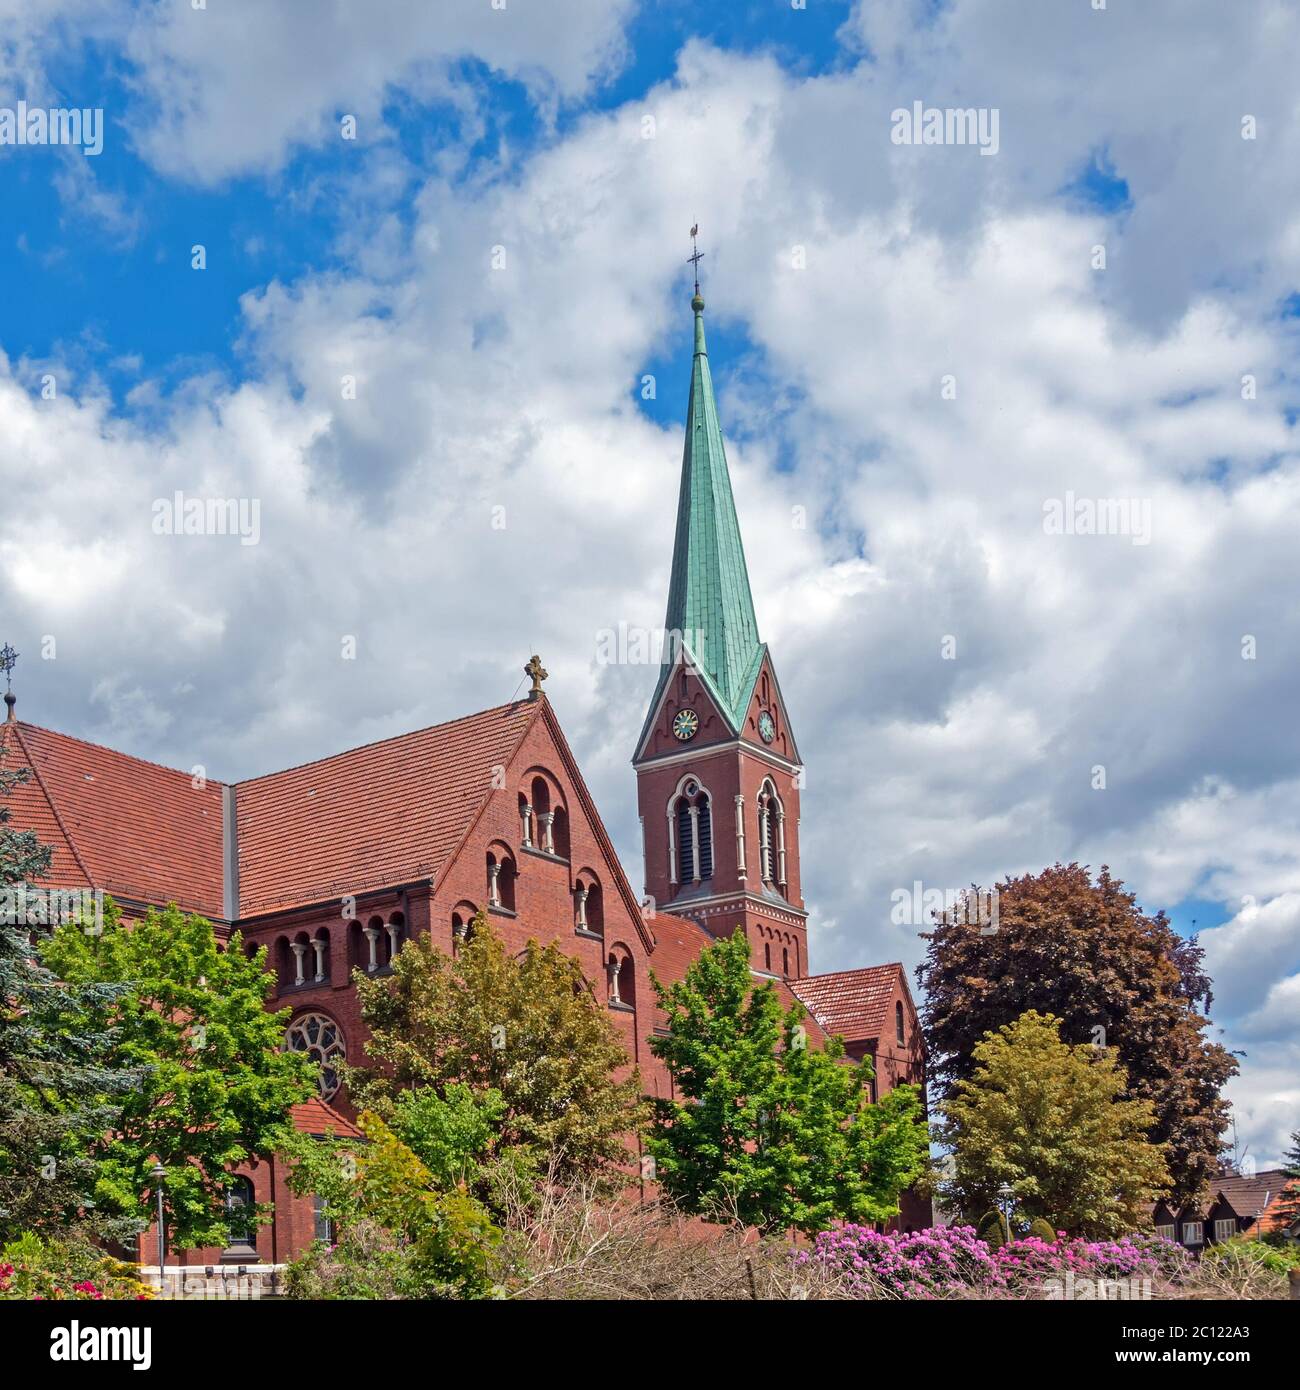 Catholic church St. Gorgonius, Goldenstedt, Lower Saxony, Germany Stock Photo